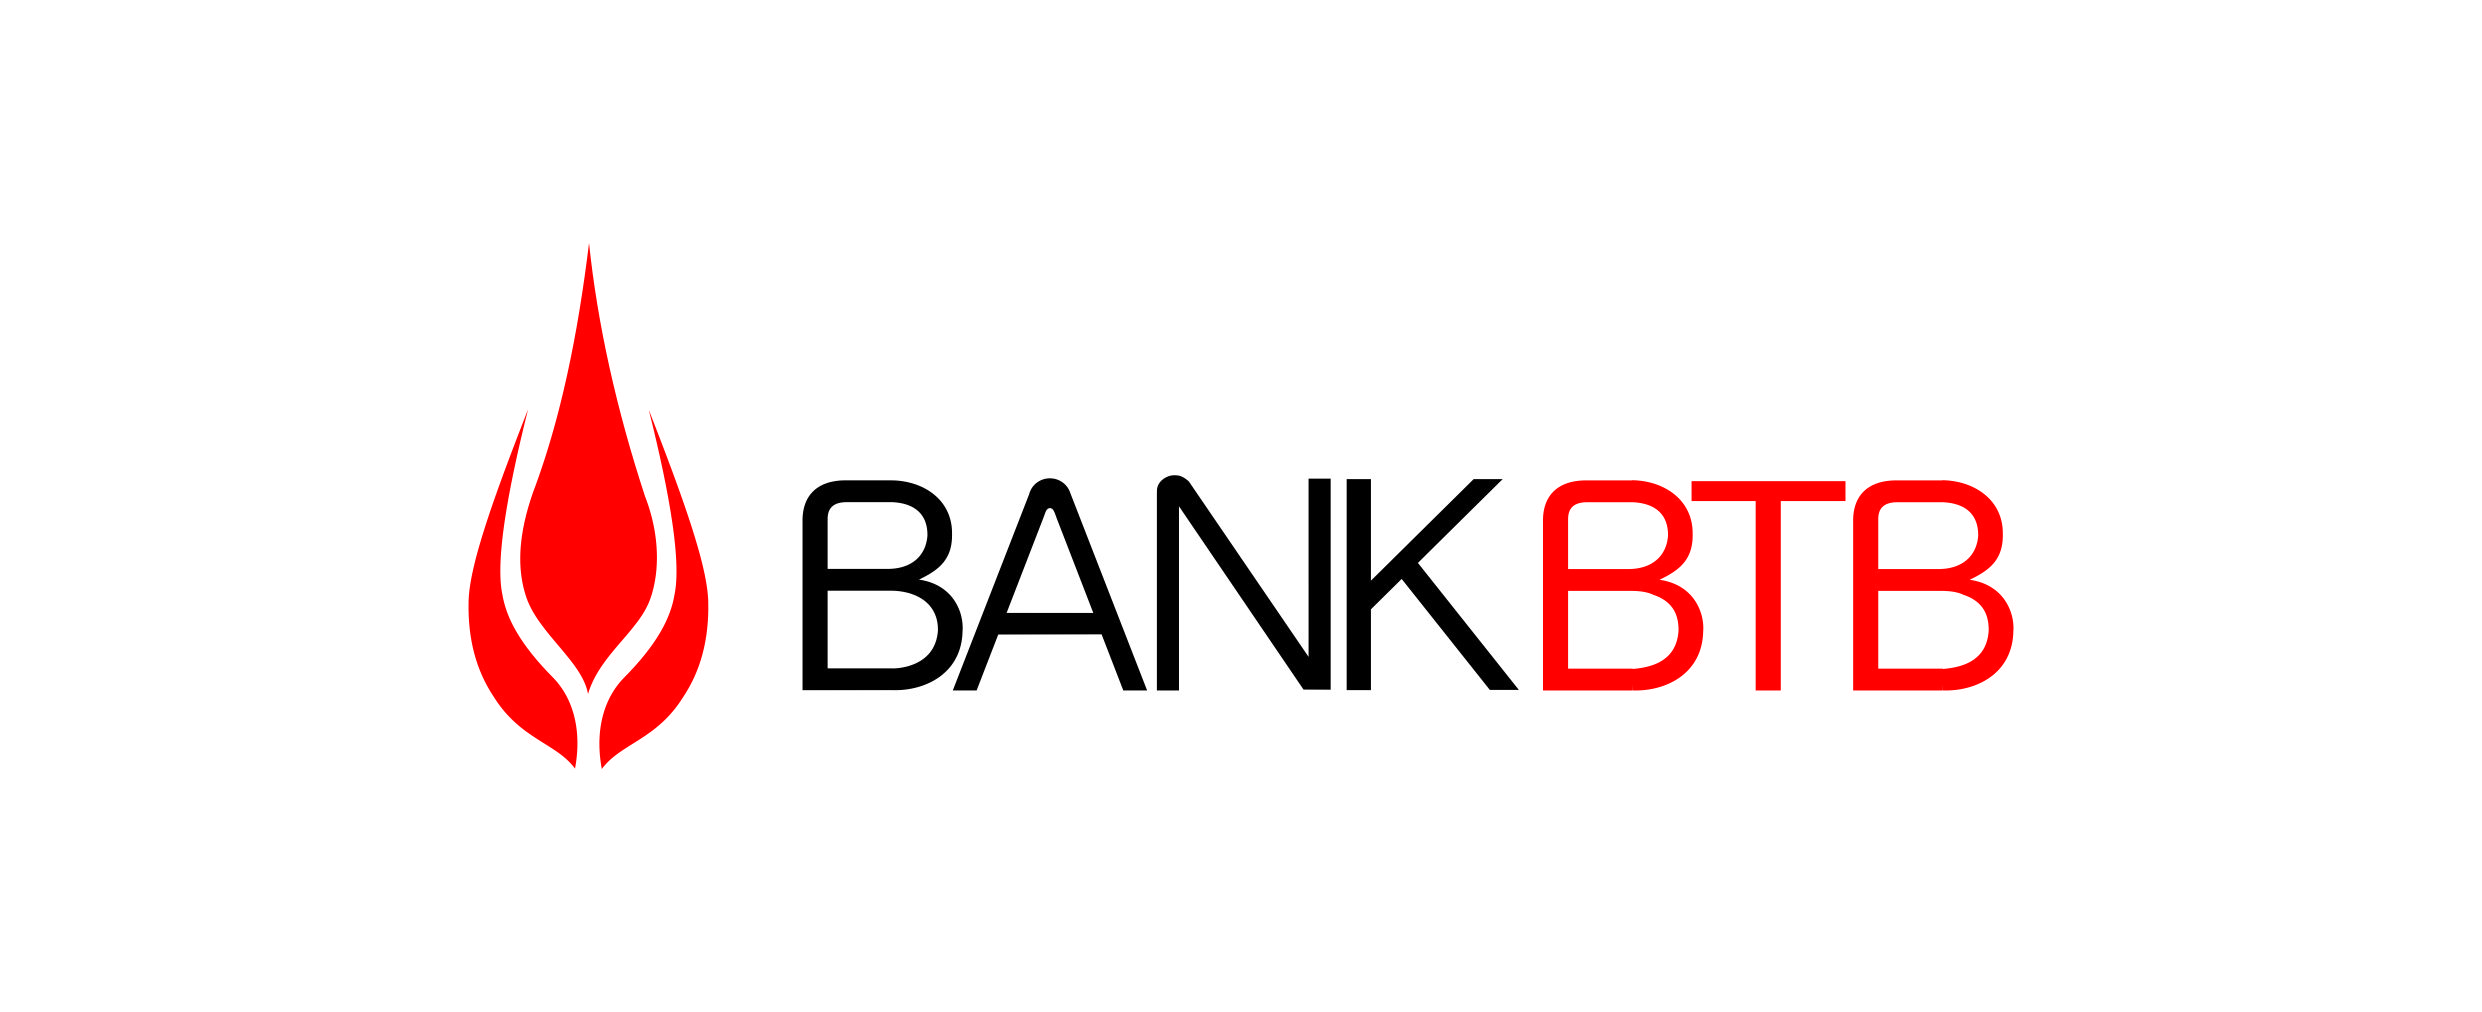 “Bank BTB” MİDA xətti ilə güzəştli ipotekanı 1 iş gününə rəsmiləşdirir